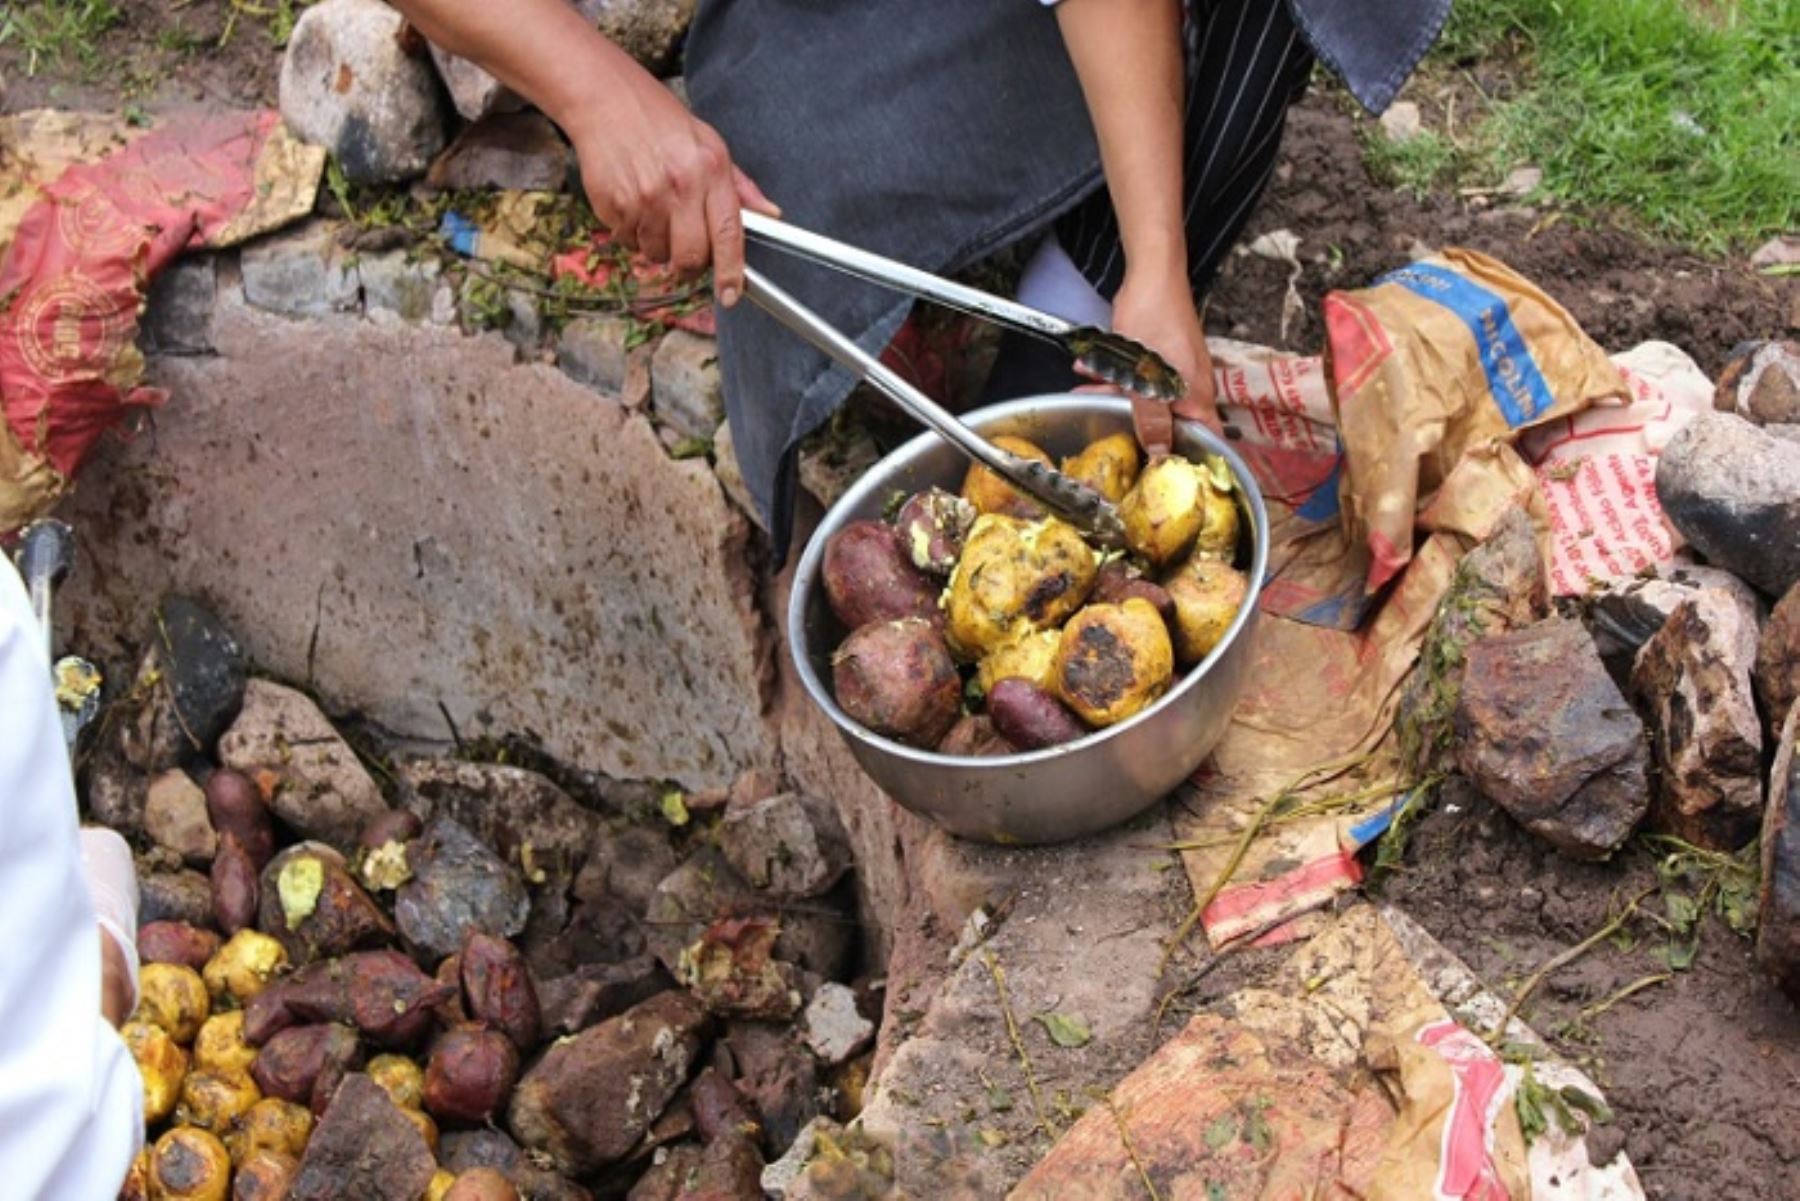 La preparación de la Pachamanca  es saludable y ancestral con una mezcla de carnes, hierbas aromáticas, leguminosas y tubérculos.